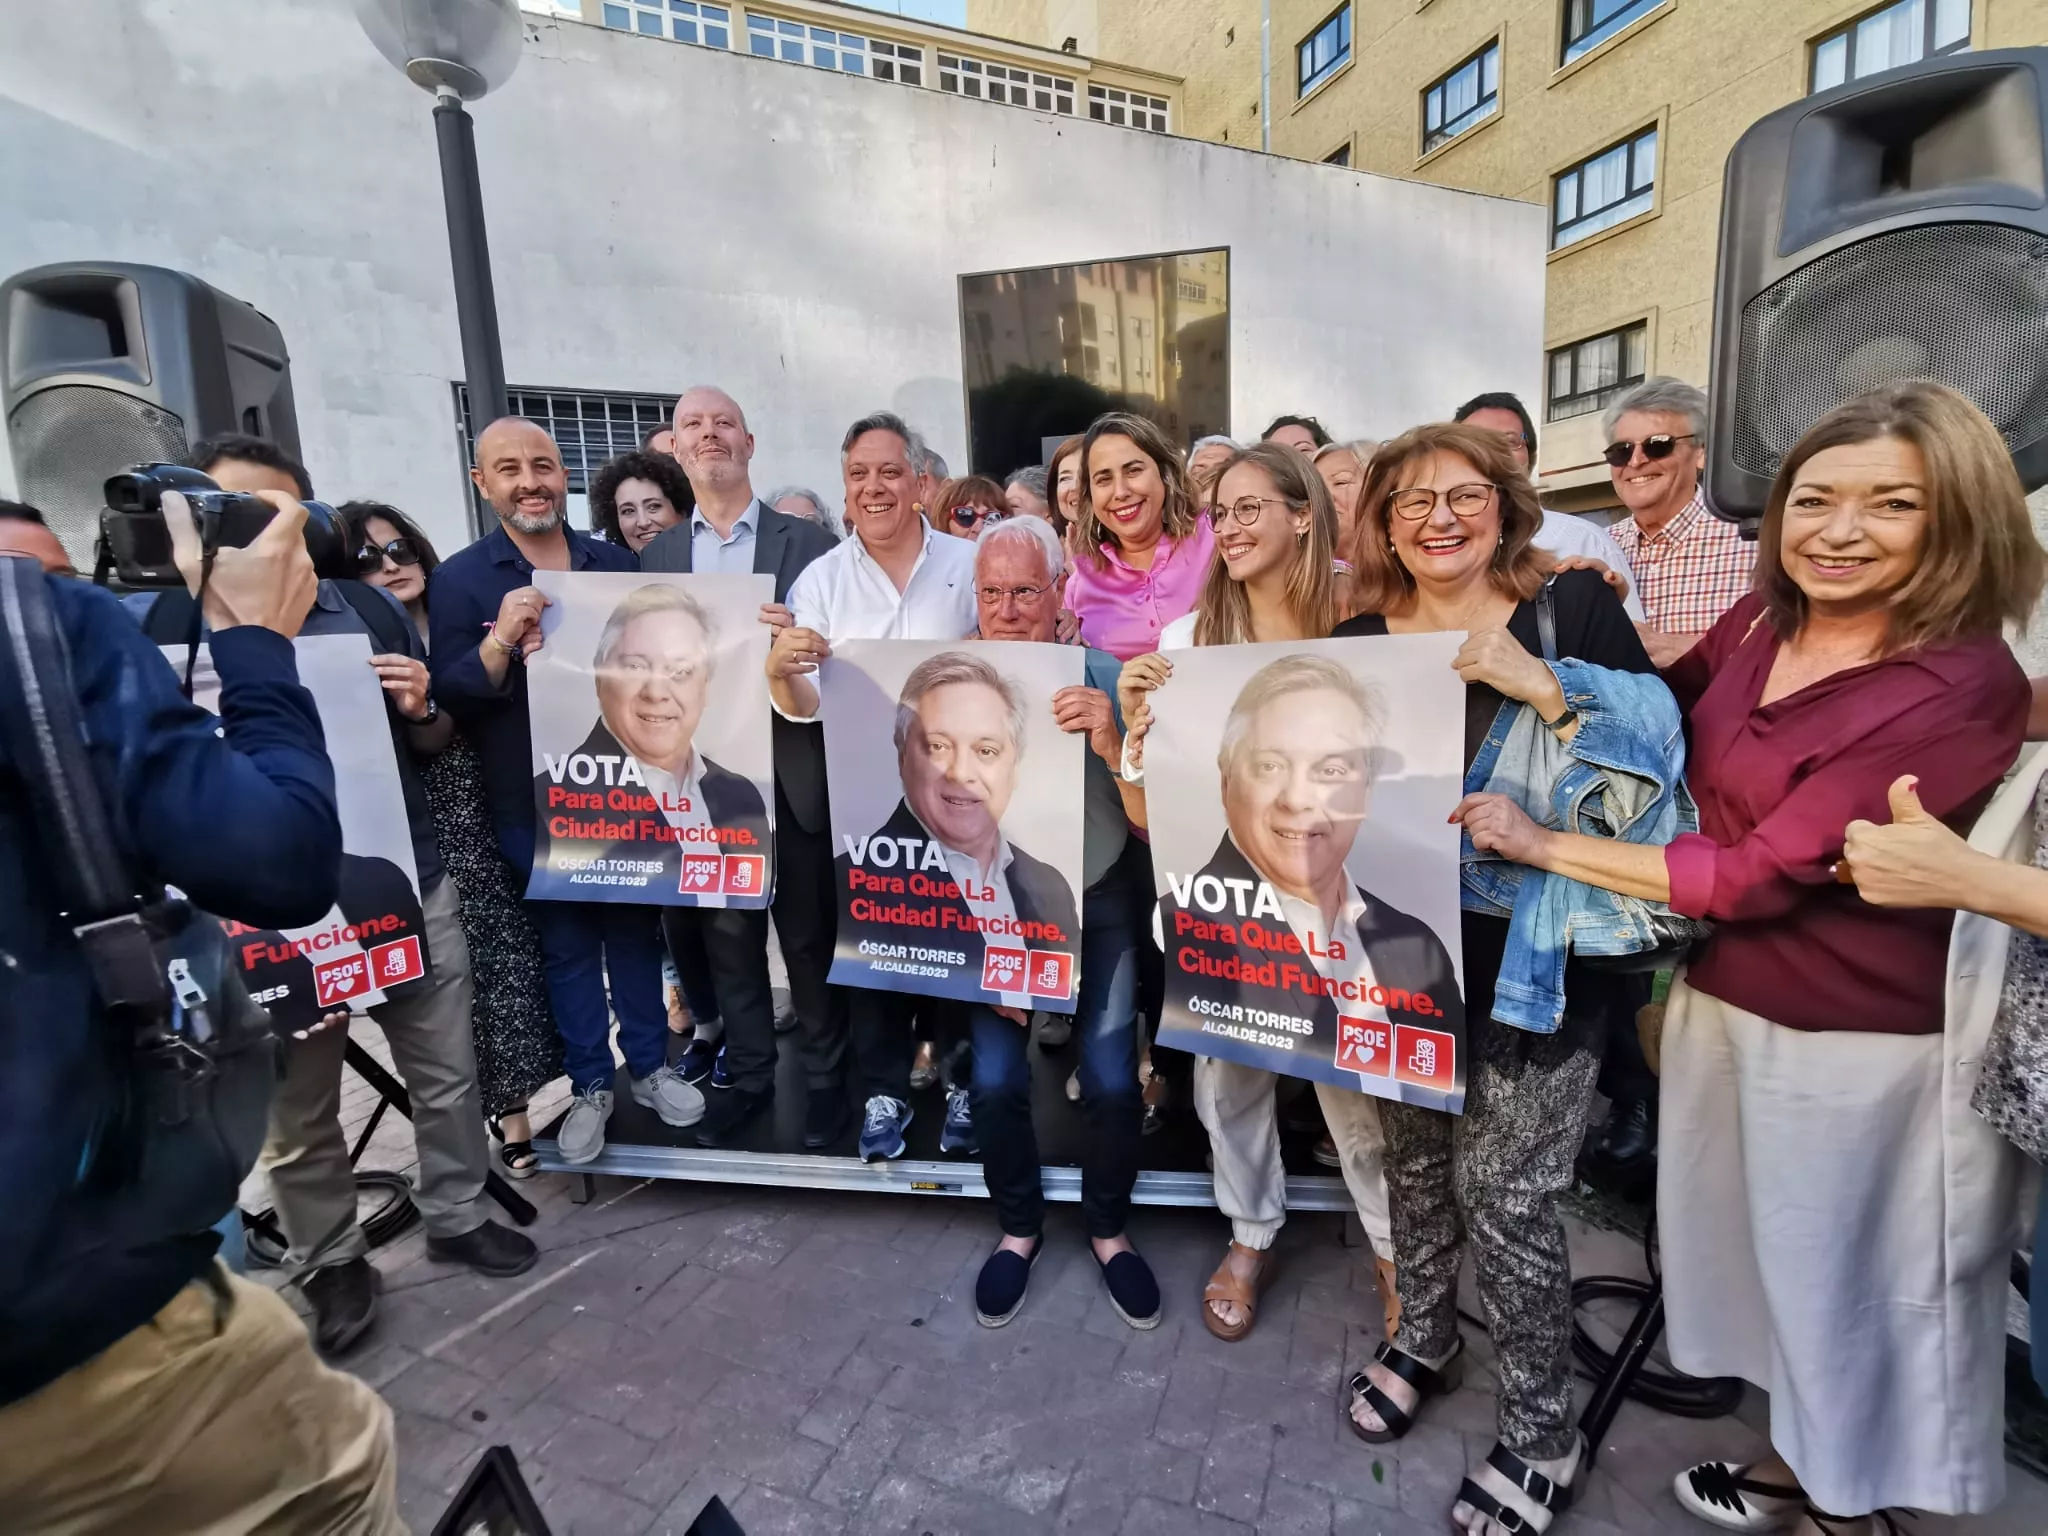 Los socialistas están convencidos que son la verdadera alternativa para el cambio en Cádiz